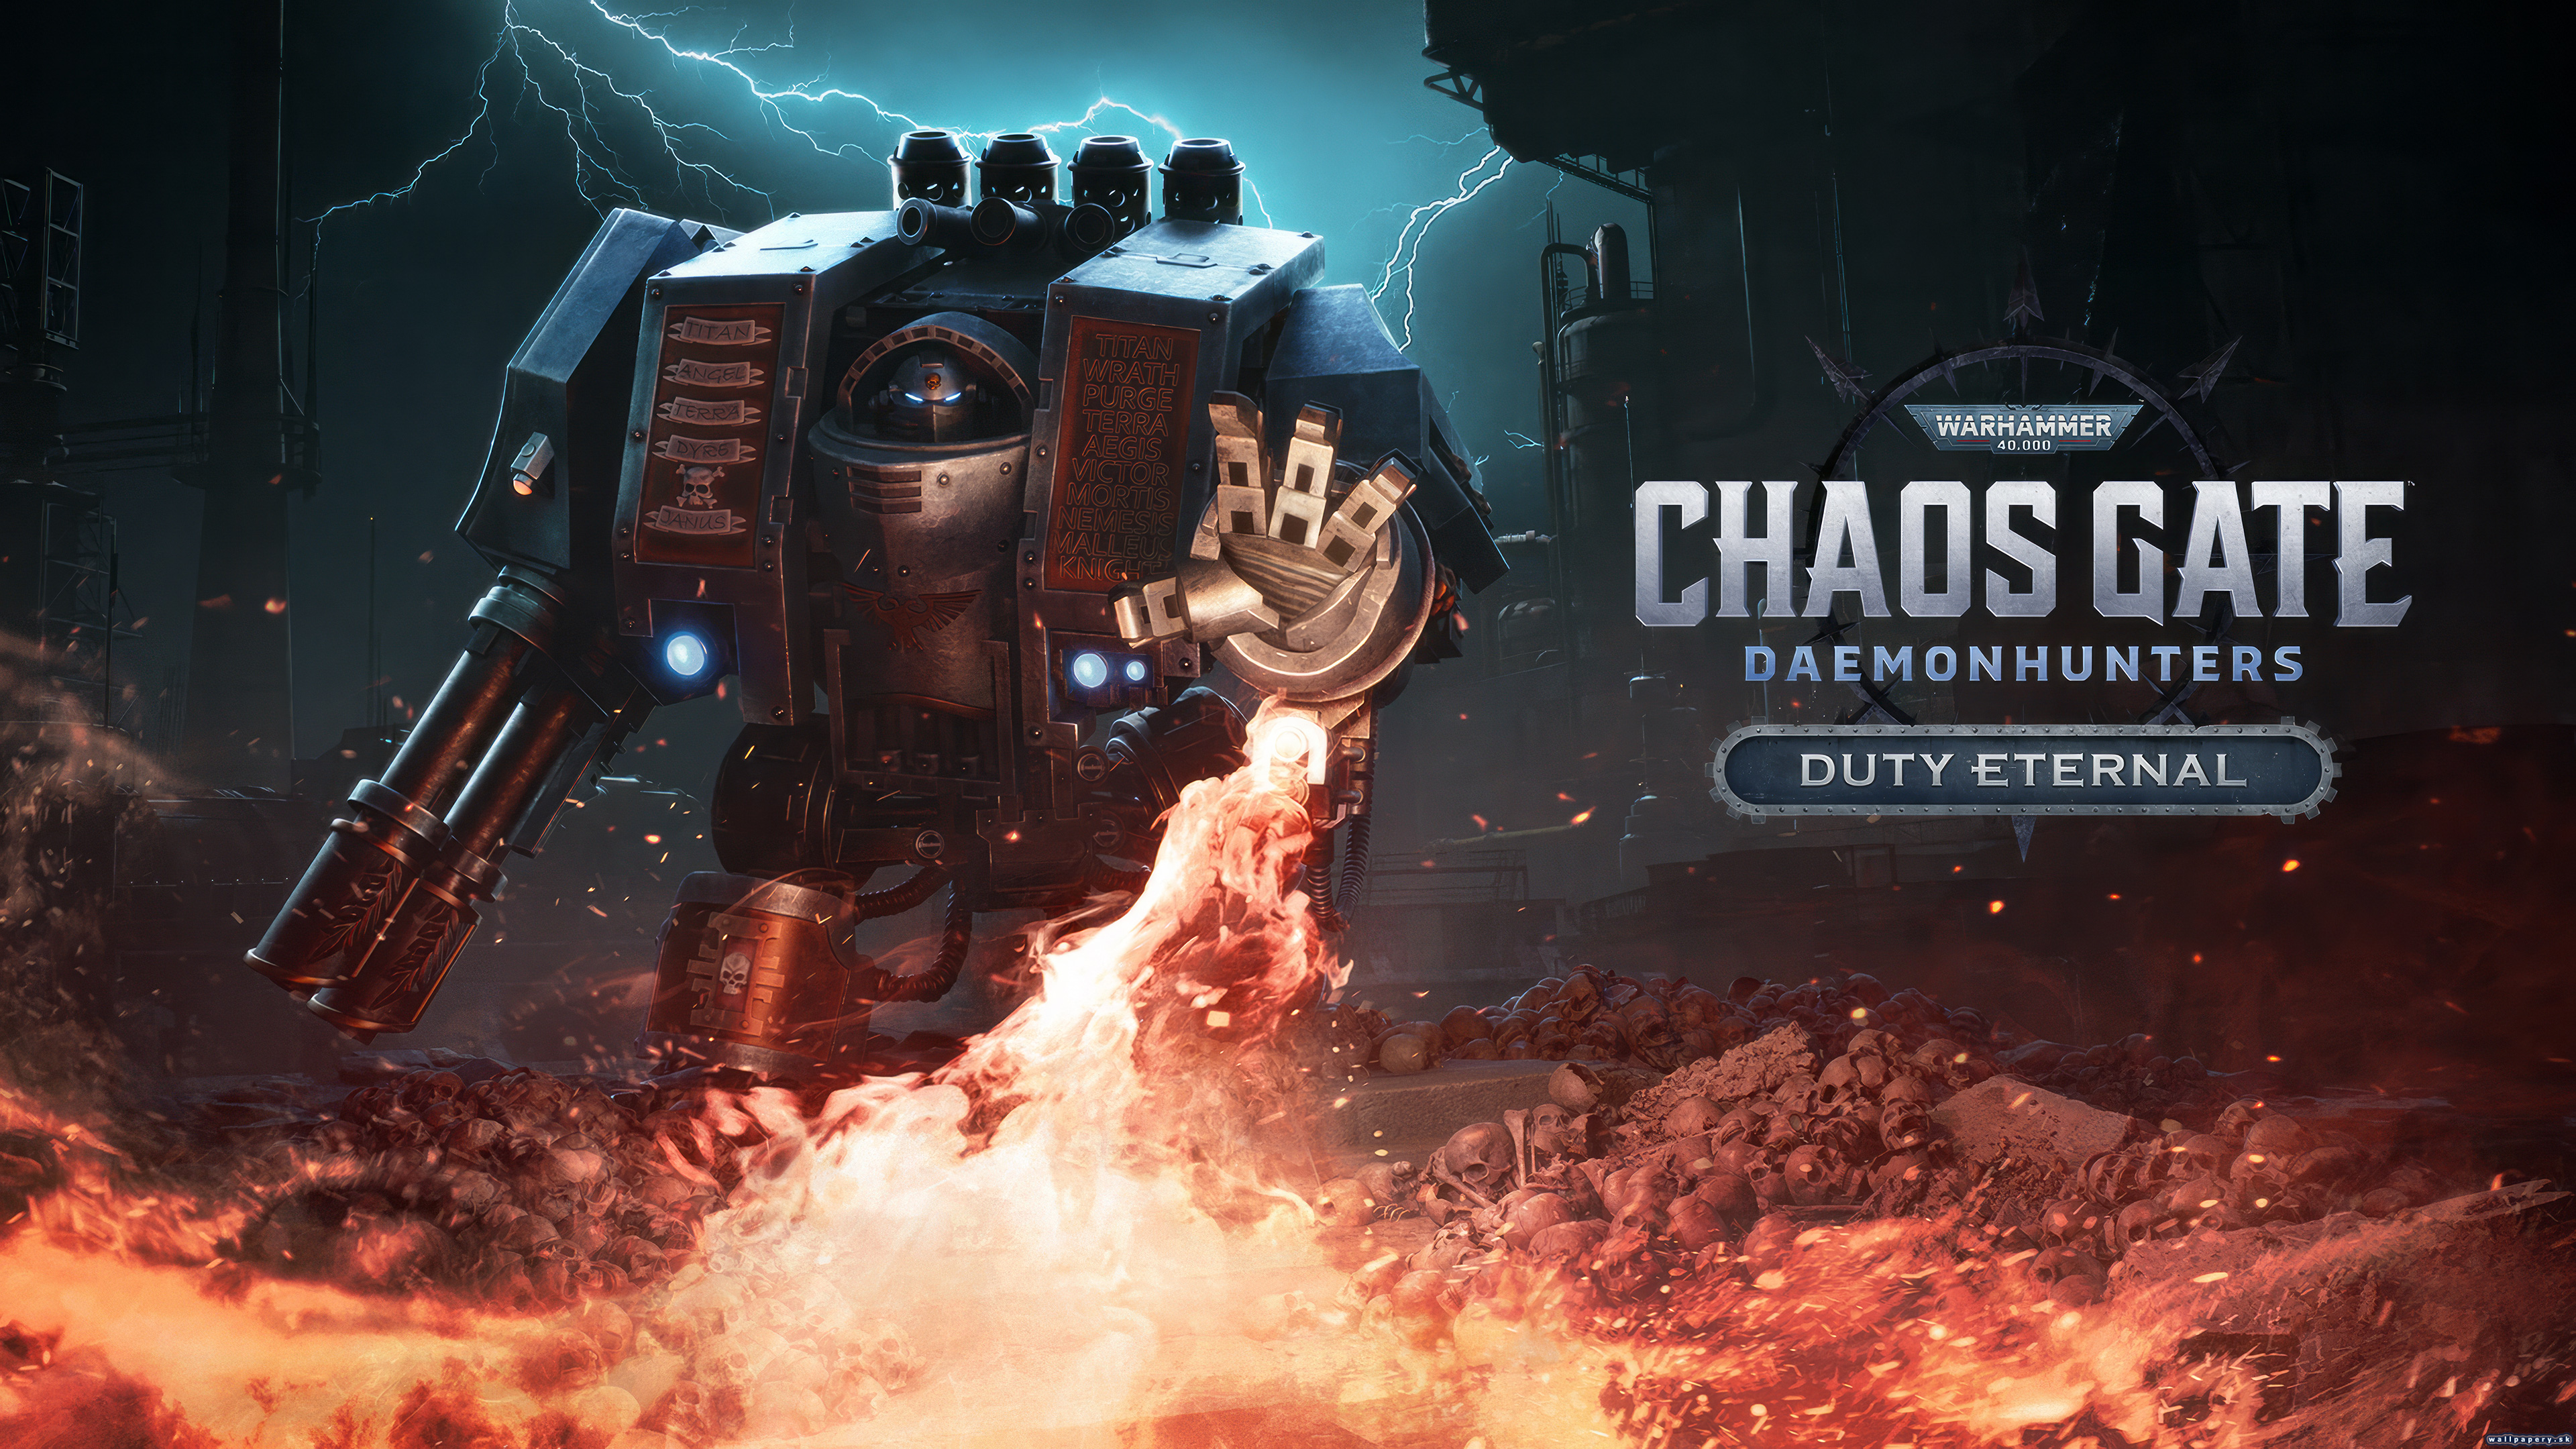 Warhammer 40,000: Chaos Gate - Daemonhunters - Duty Eternal - wallpaper 1